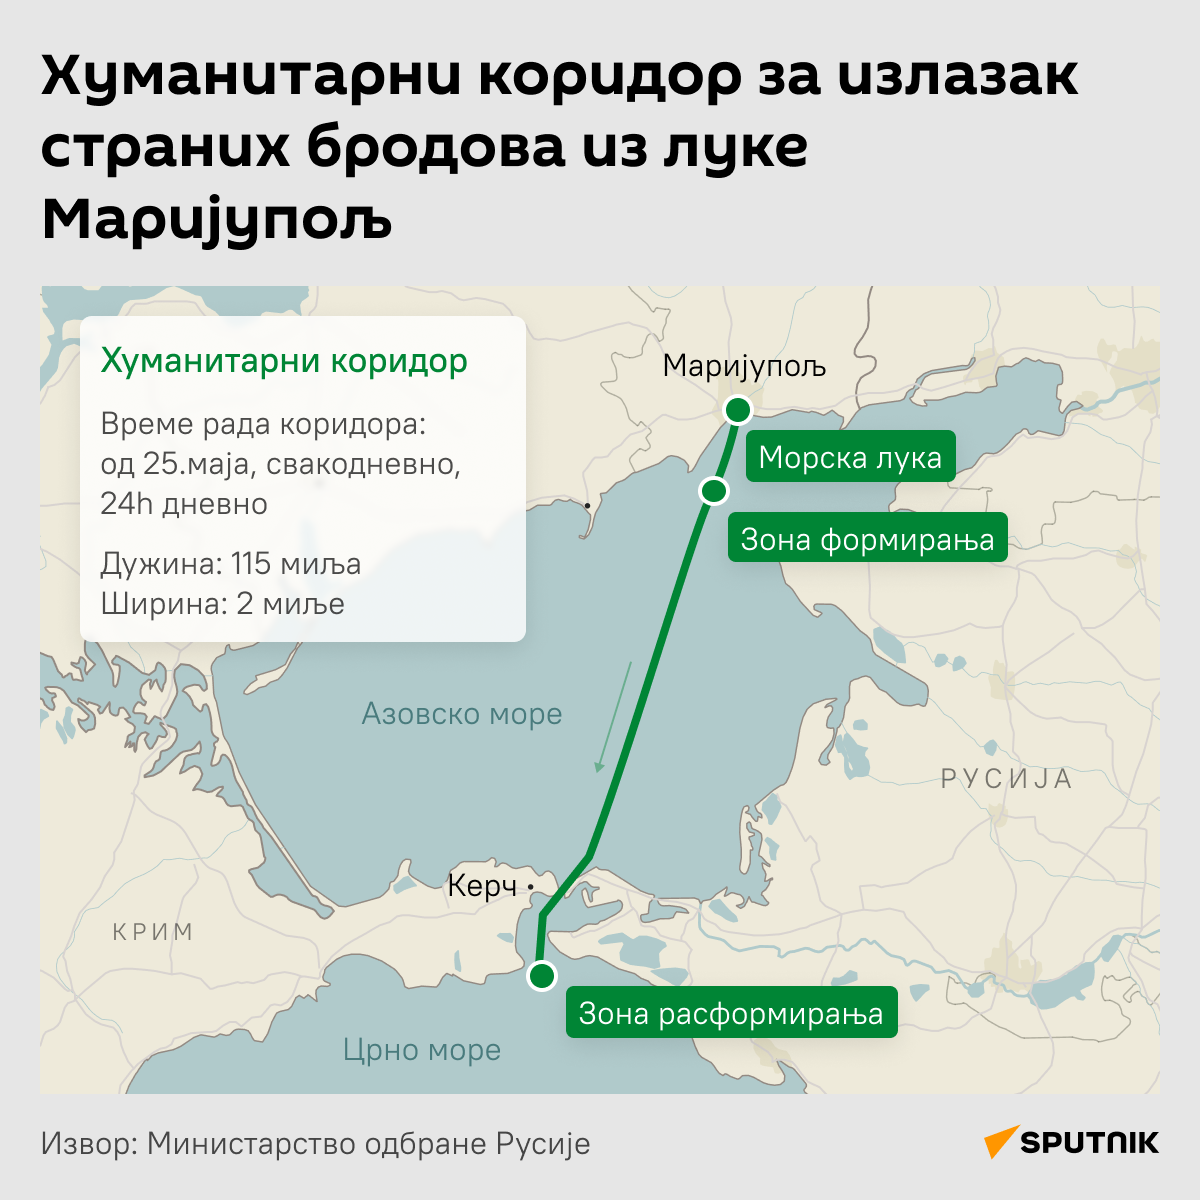 Хуманитарни коридор за излазак страних бродова из луке Маријупољ  -  Инфографика  ћИРИЛИЦА деск  - Sputnik Србија